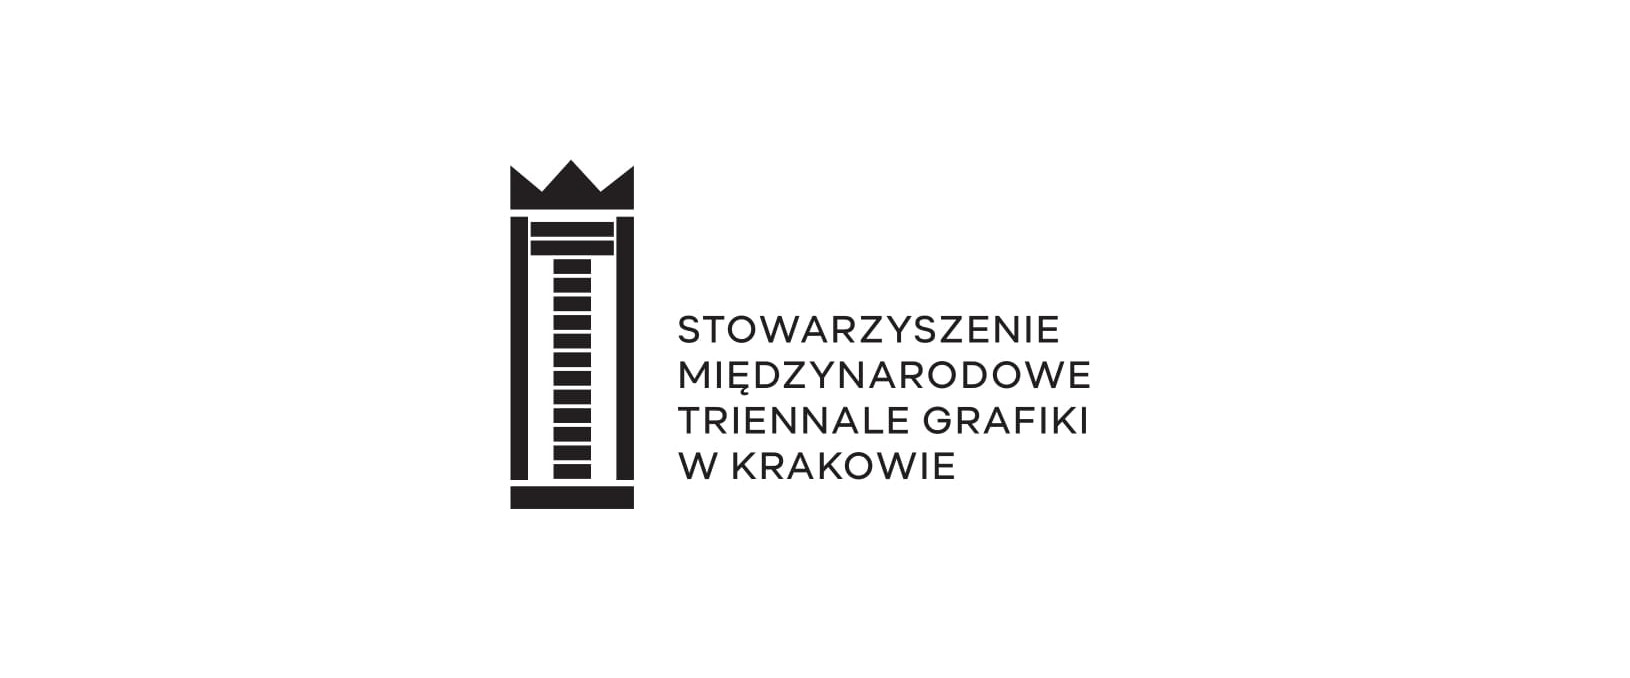 Stowarzyszenie Międzynarodowe Triennale Grafiki w Krakowie